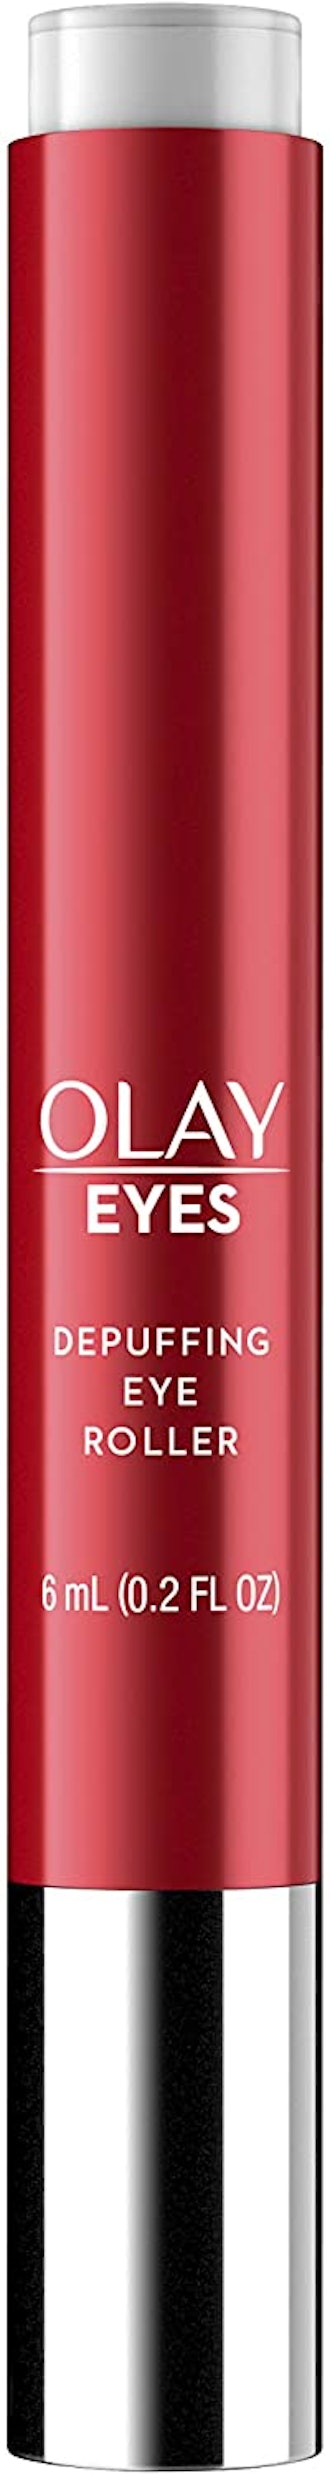 Olay Eye Roller